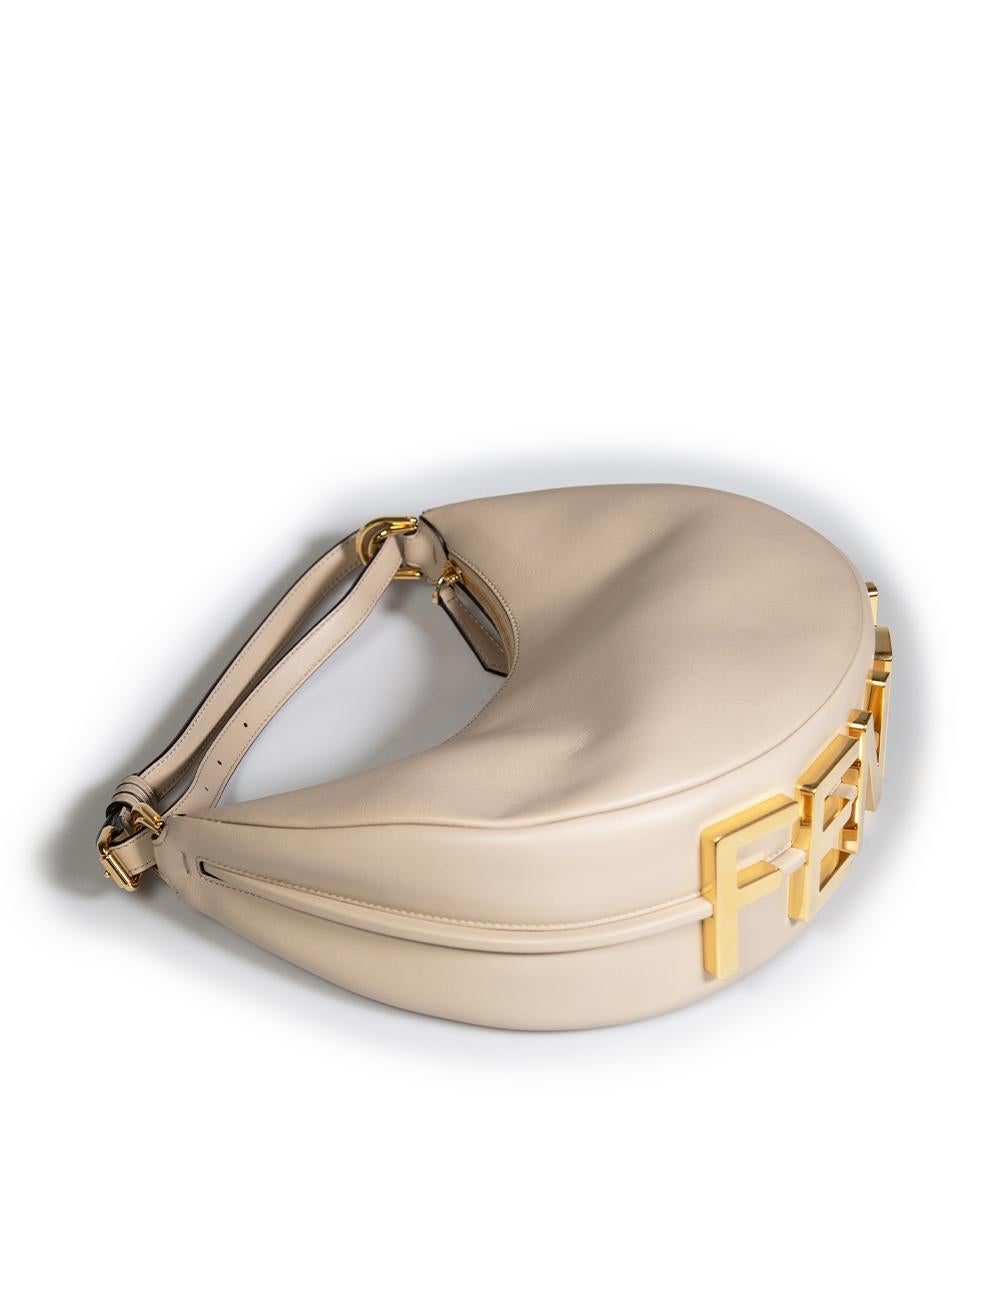 Fendi Beige Leather Fendigraphy Small Shoulder Bag For Sale 2